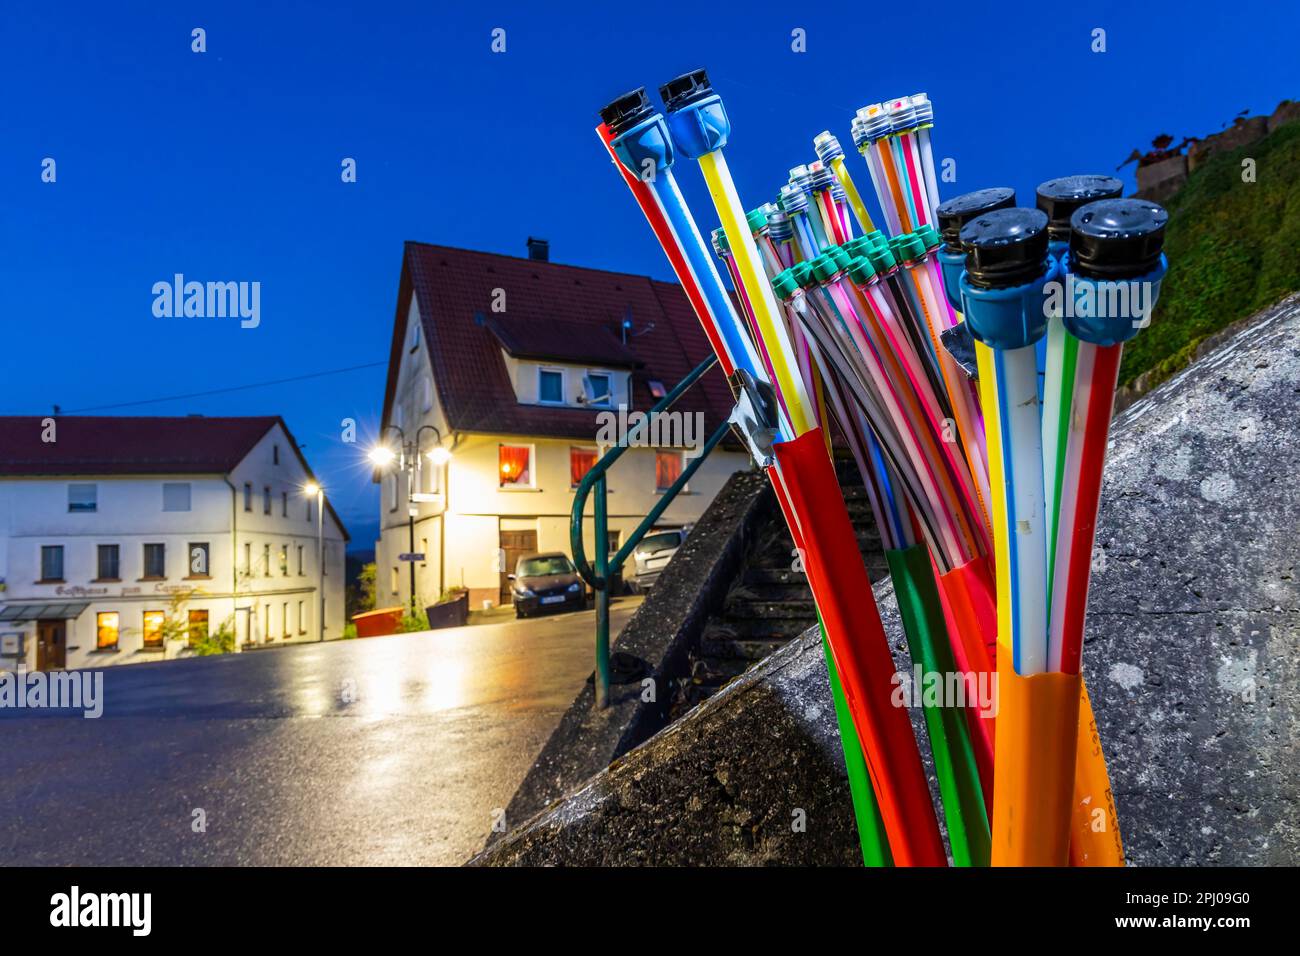 Infrastruttura a banda larga, Internet veloce e comunicazione tramite cavi in fibra ottica, regione rurale, Muensingen, Baden-Wuerttemberg, Germania Foto Stock